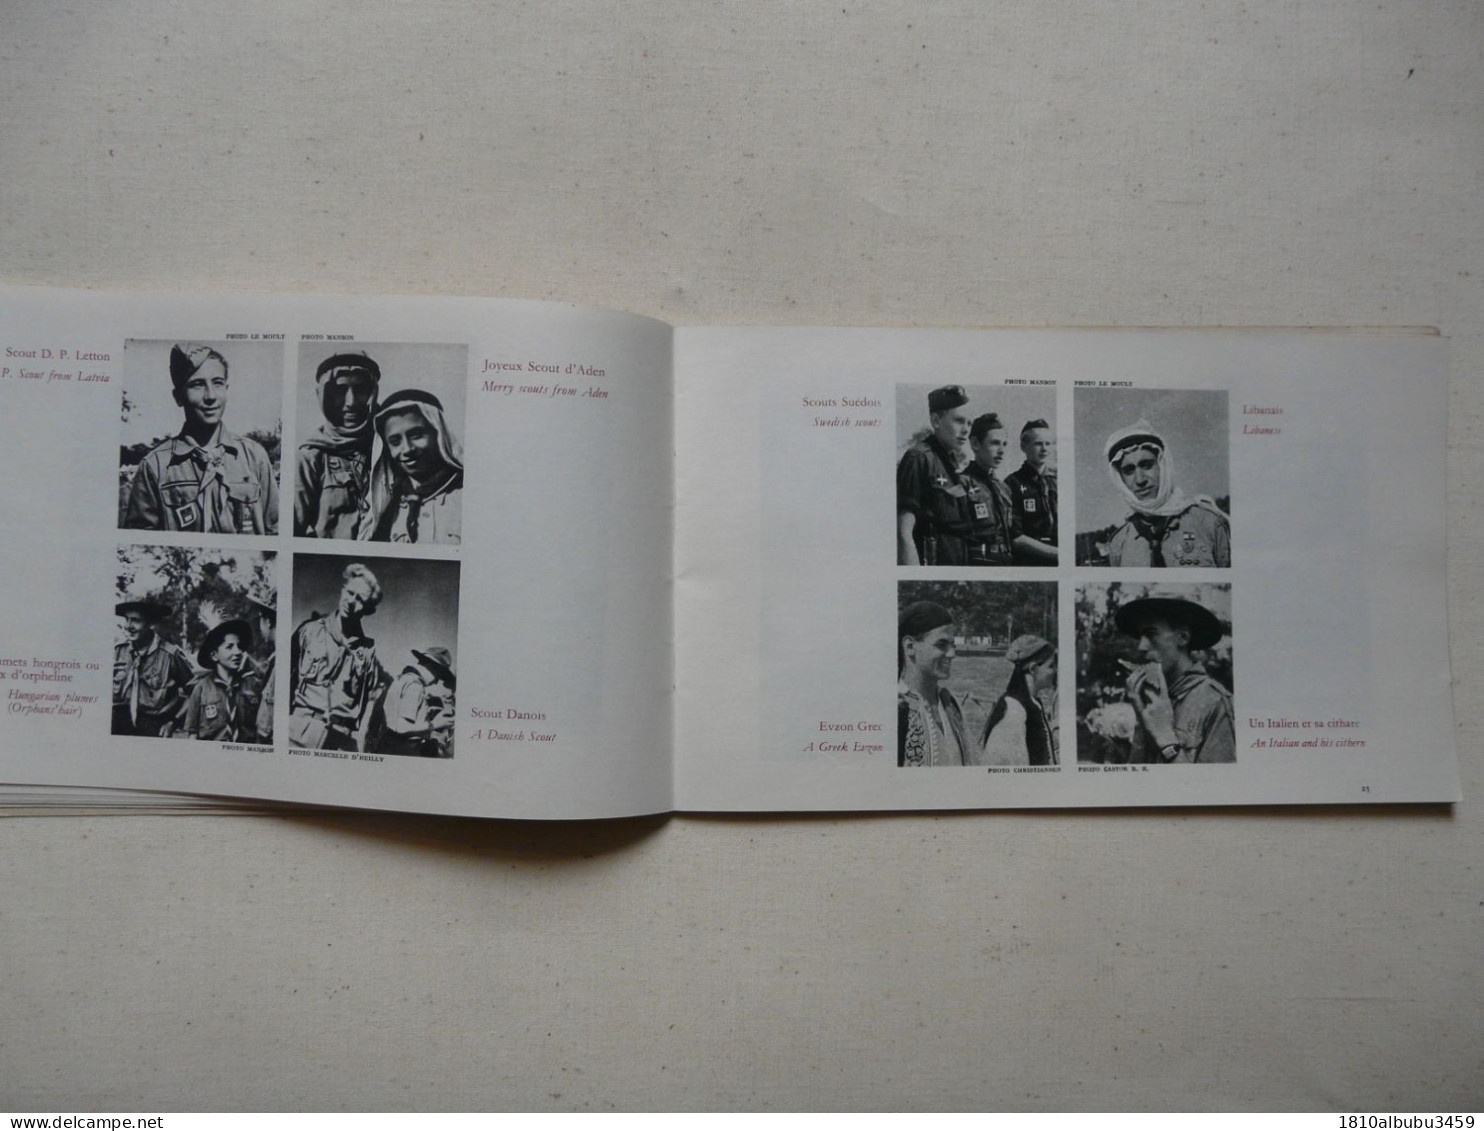 LE JAMBOREE DE LA PAIX - MOISSON 1947 : Broché 72 pages - Nombreuses illustrations et photos en noir et blanc